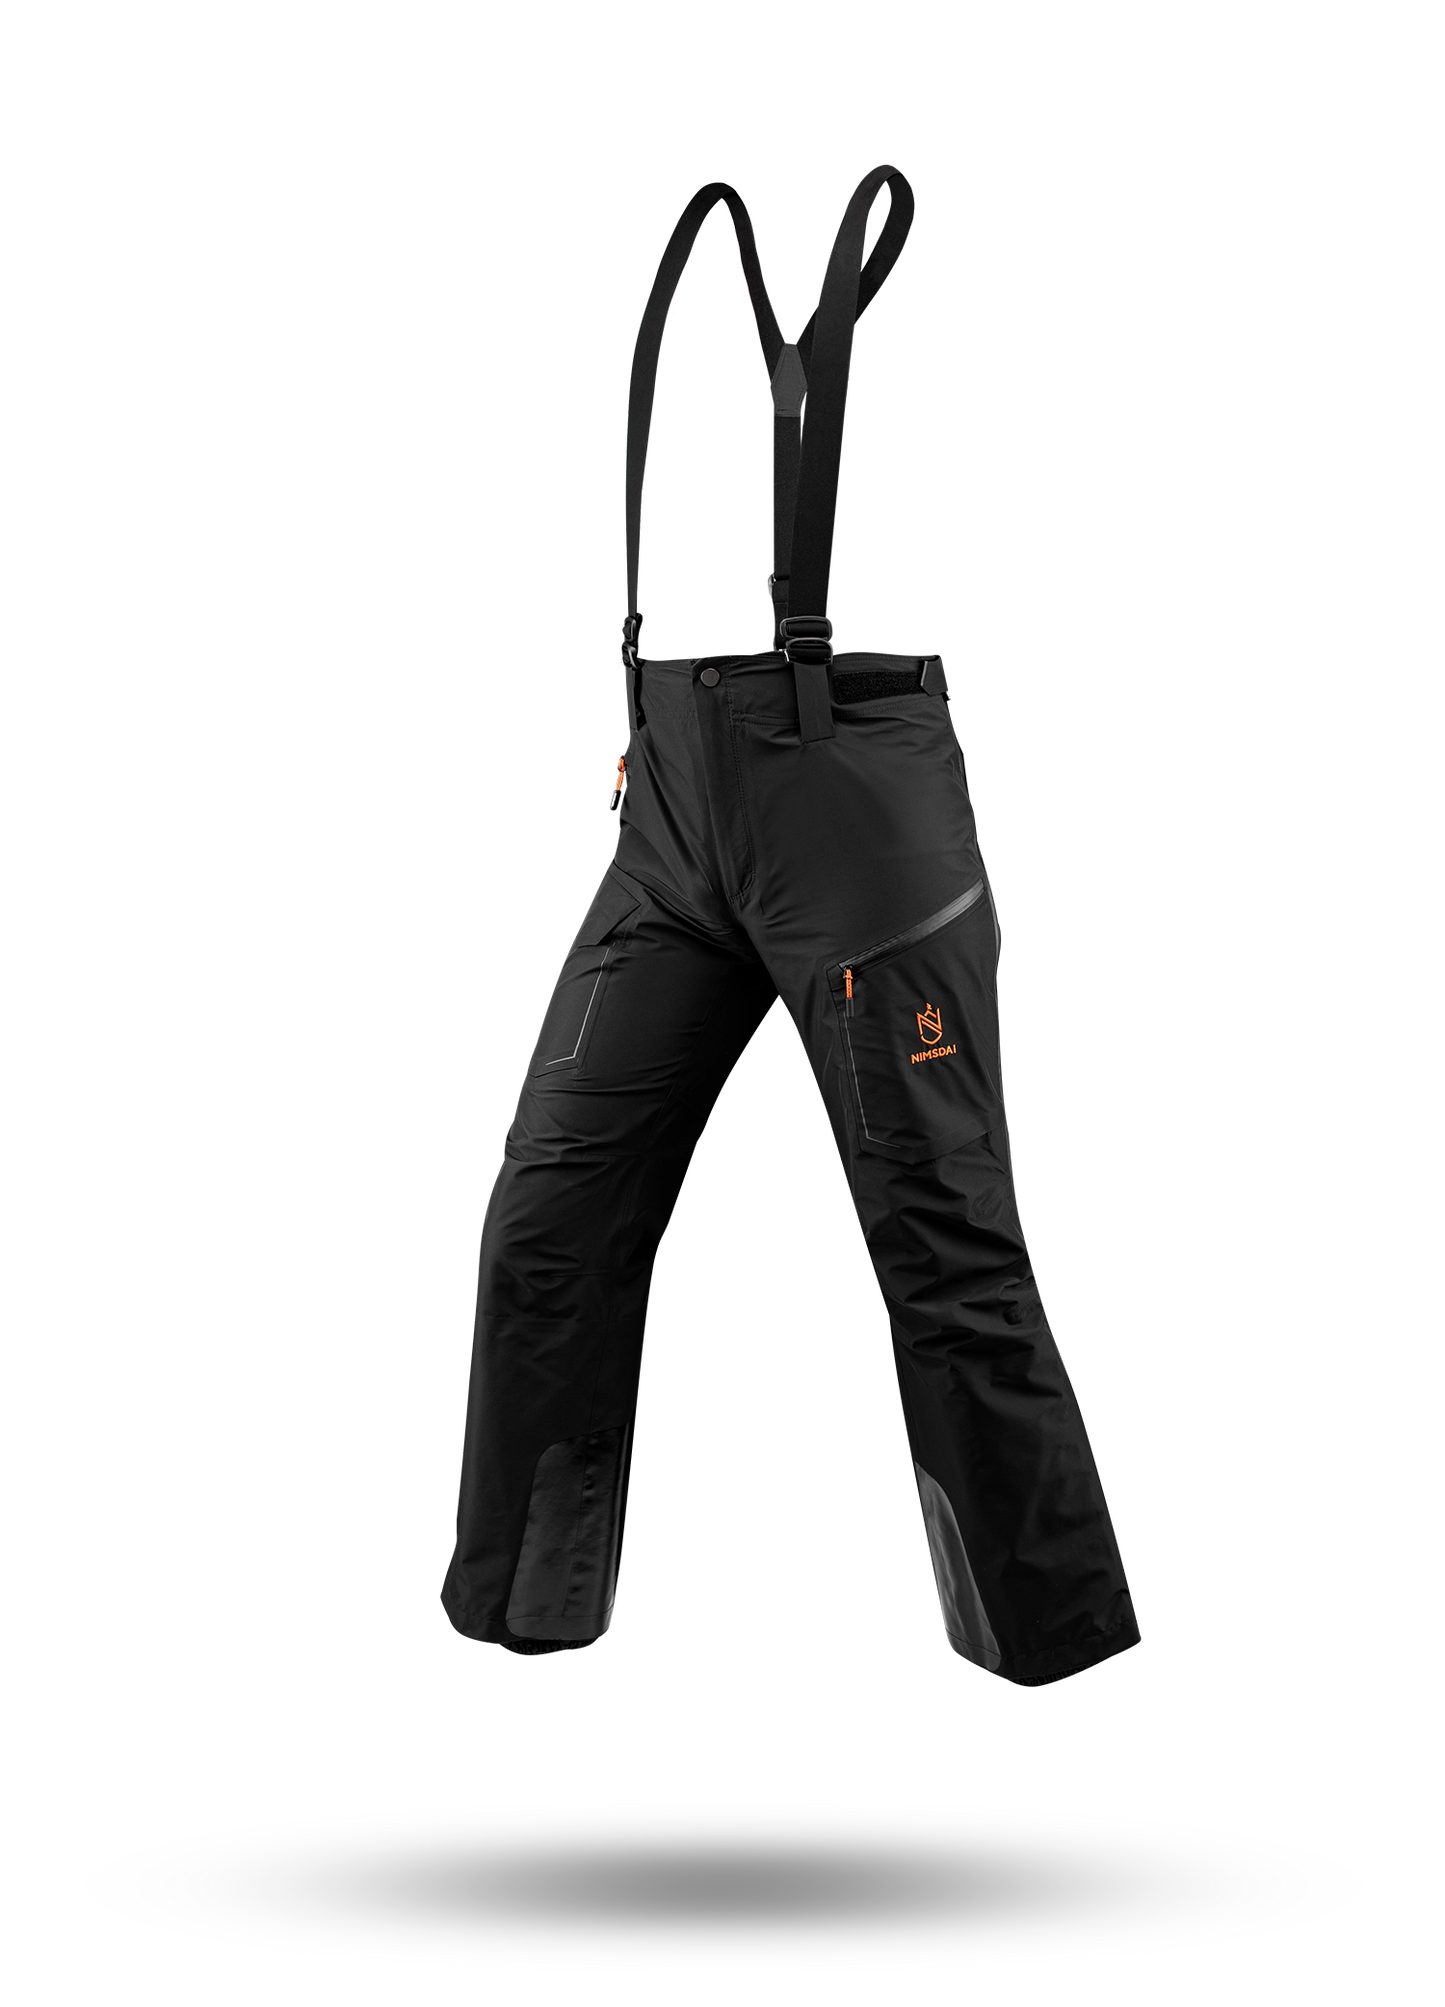 K2 Winter Waterproof Trousers